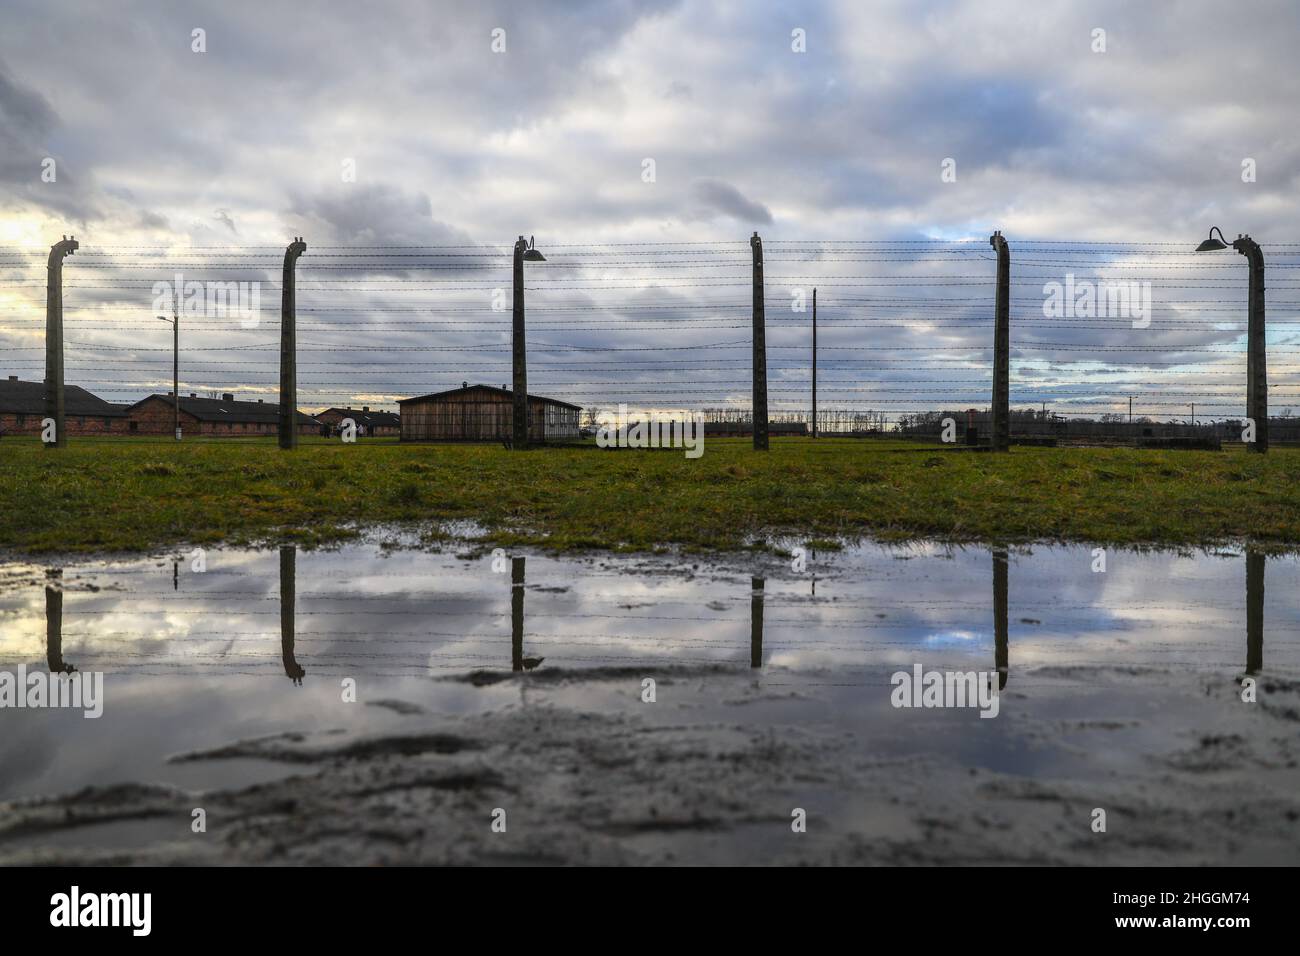 Clôture en barbelés et casernes à l'ancien camp de concentration et d'extermination nazi-allemand Auschwitz II-Birkenau à Oswiecim, en Pologne, le 3 janvier 2022. Banque D'Images